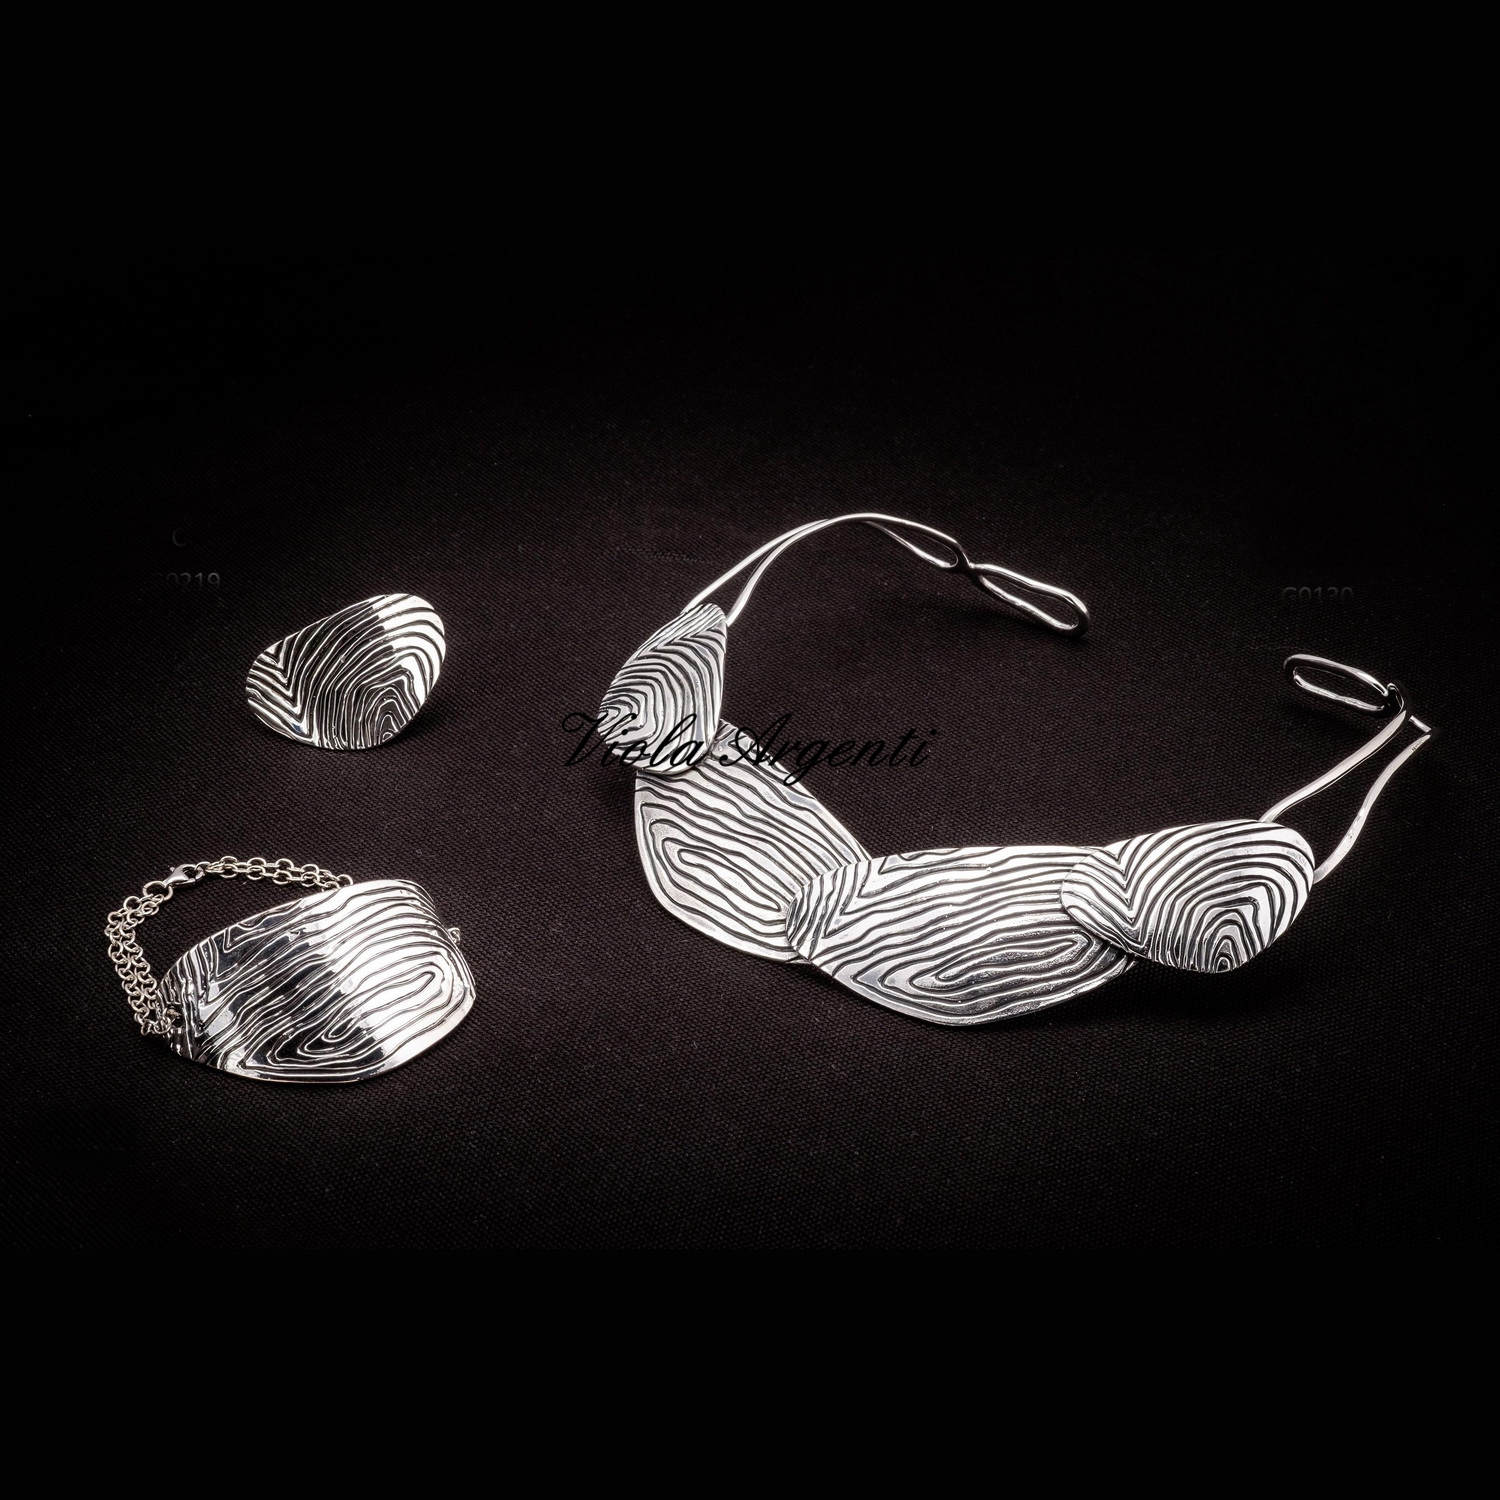 Girocollo bracciale e anello con piastra in argento 925 lavorazione etnica di Arte Fiorentina. Argento online